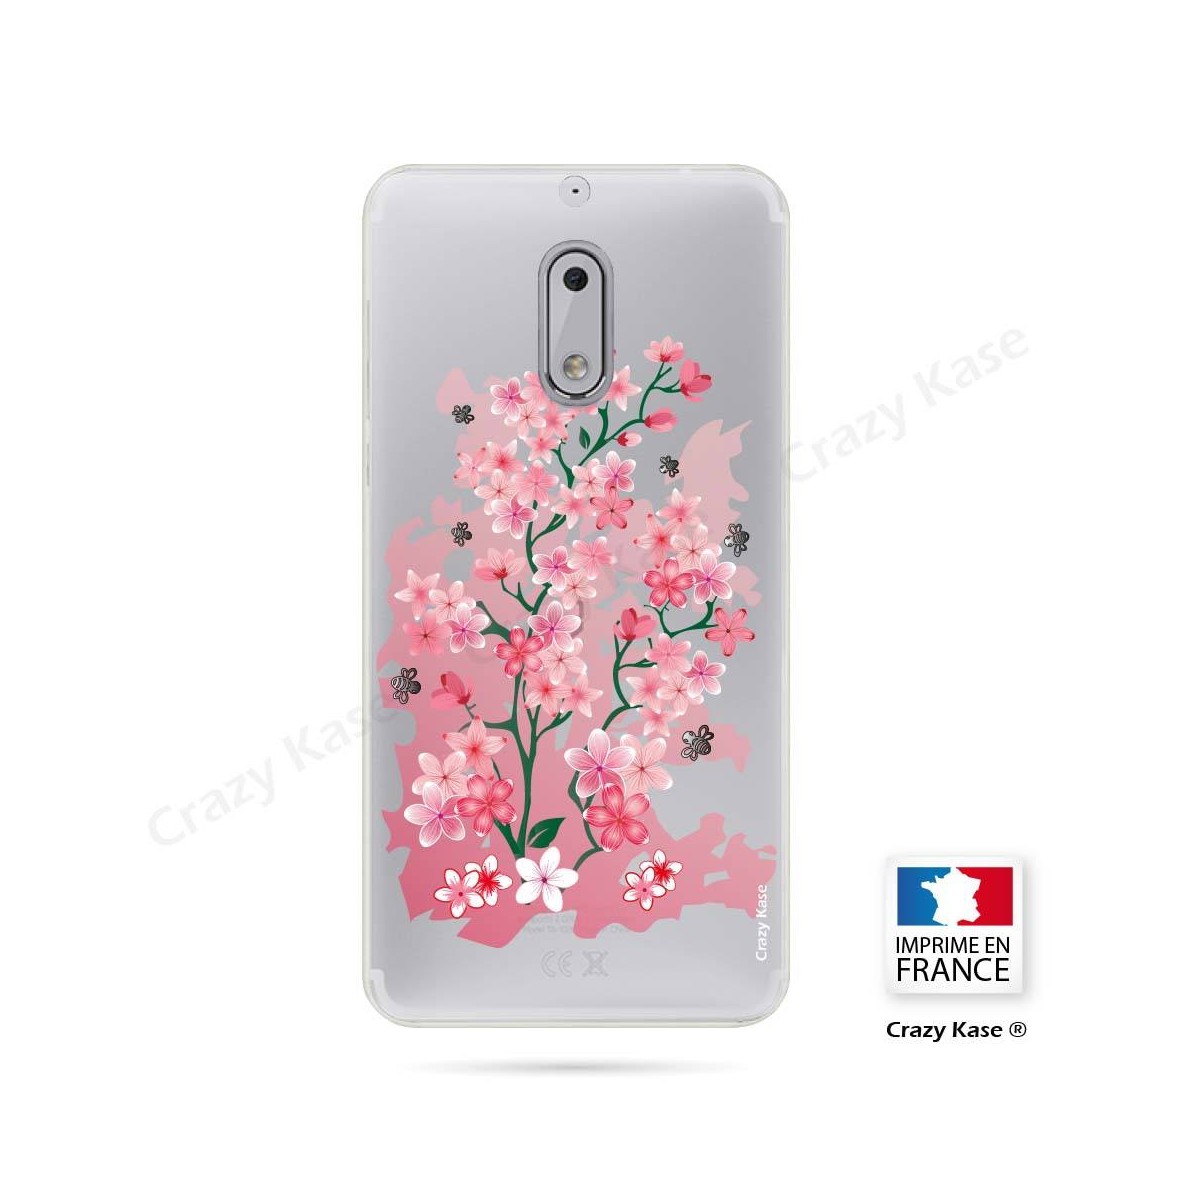 Coque Nokia 6 souple motif Fleurs de Cerisier - Crazy Kase